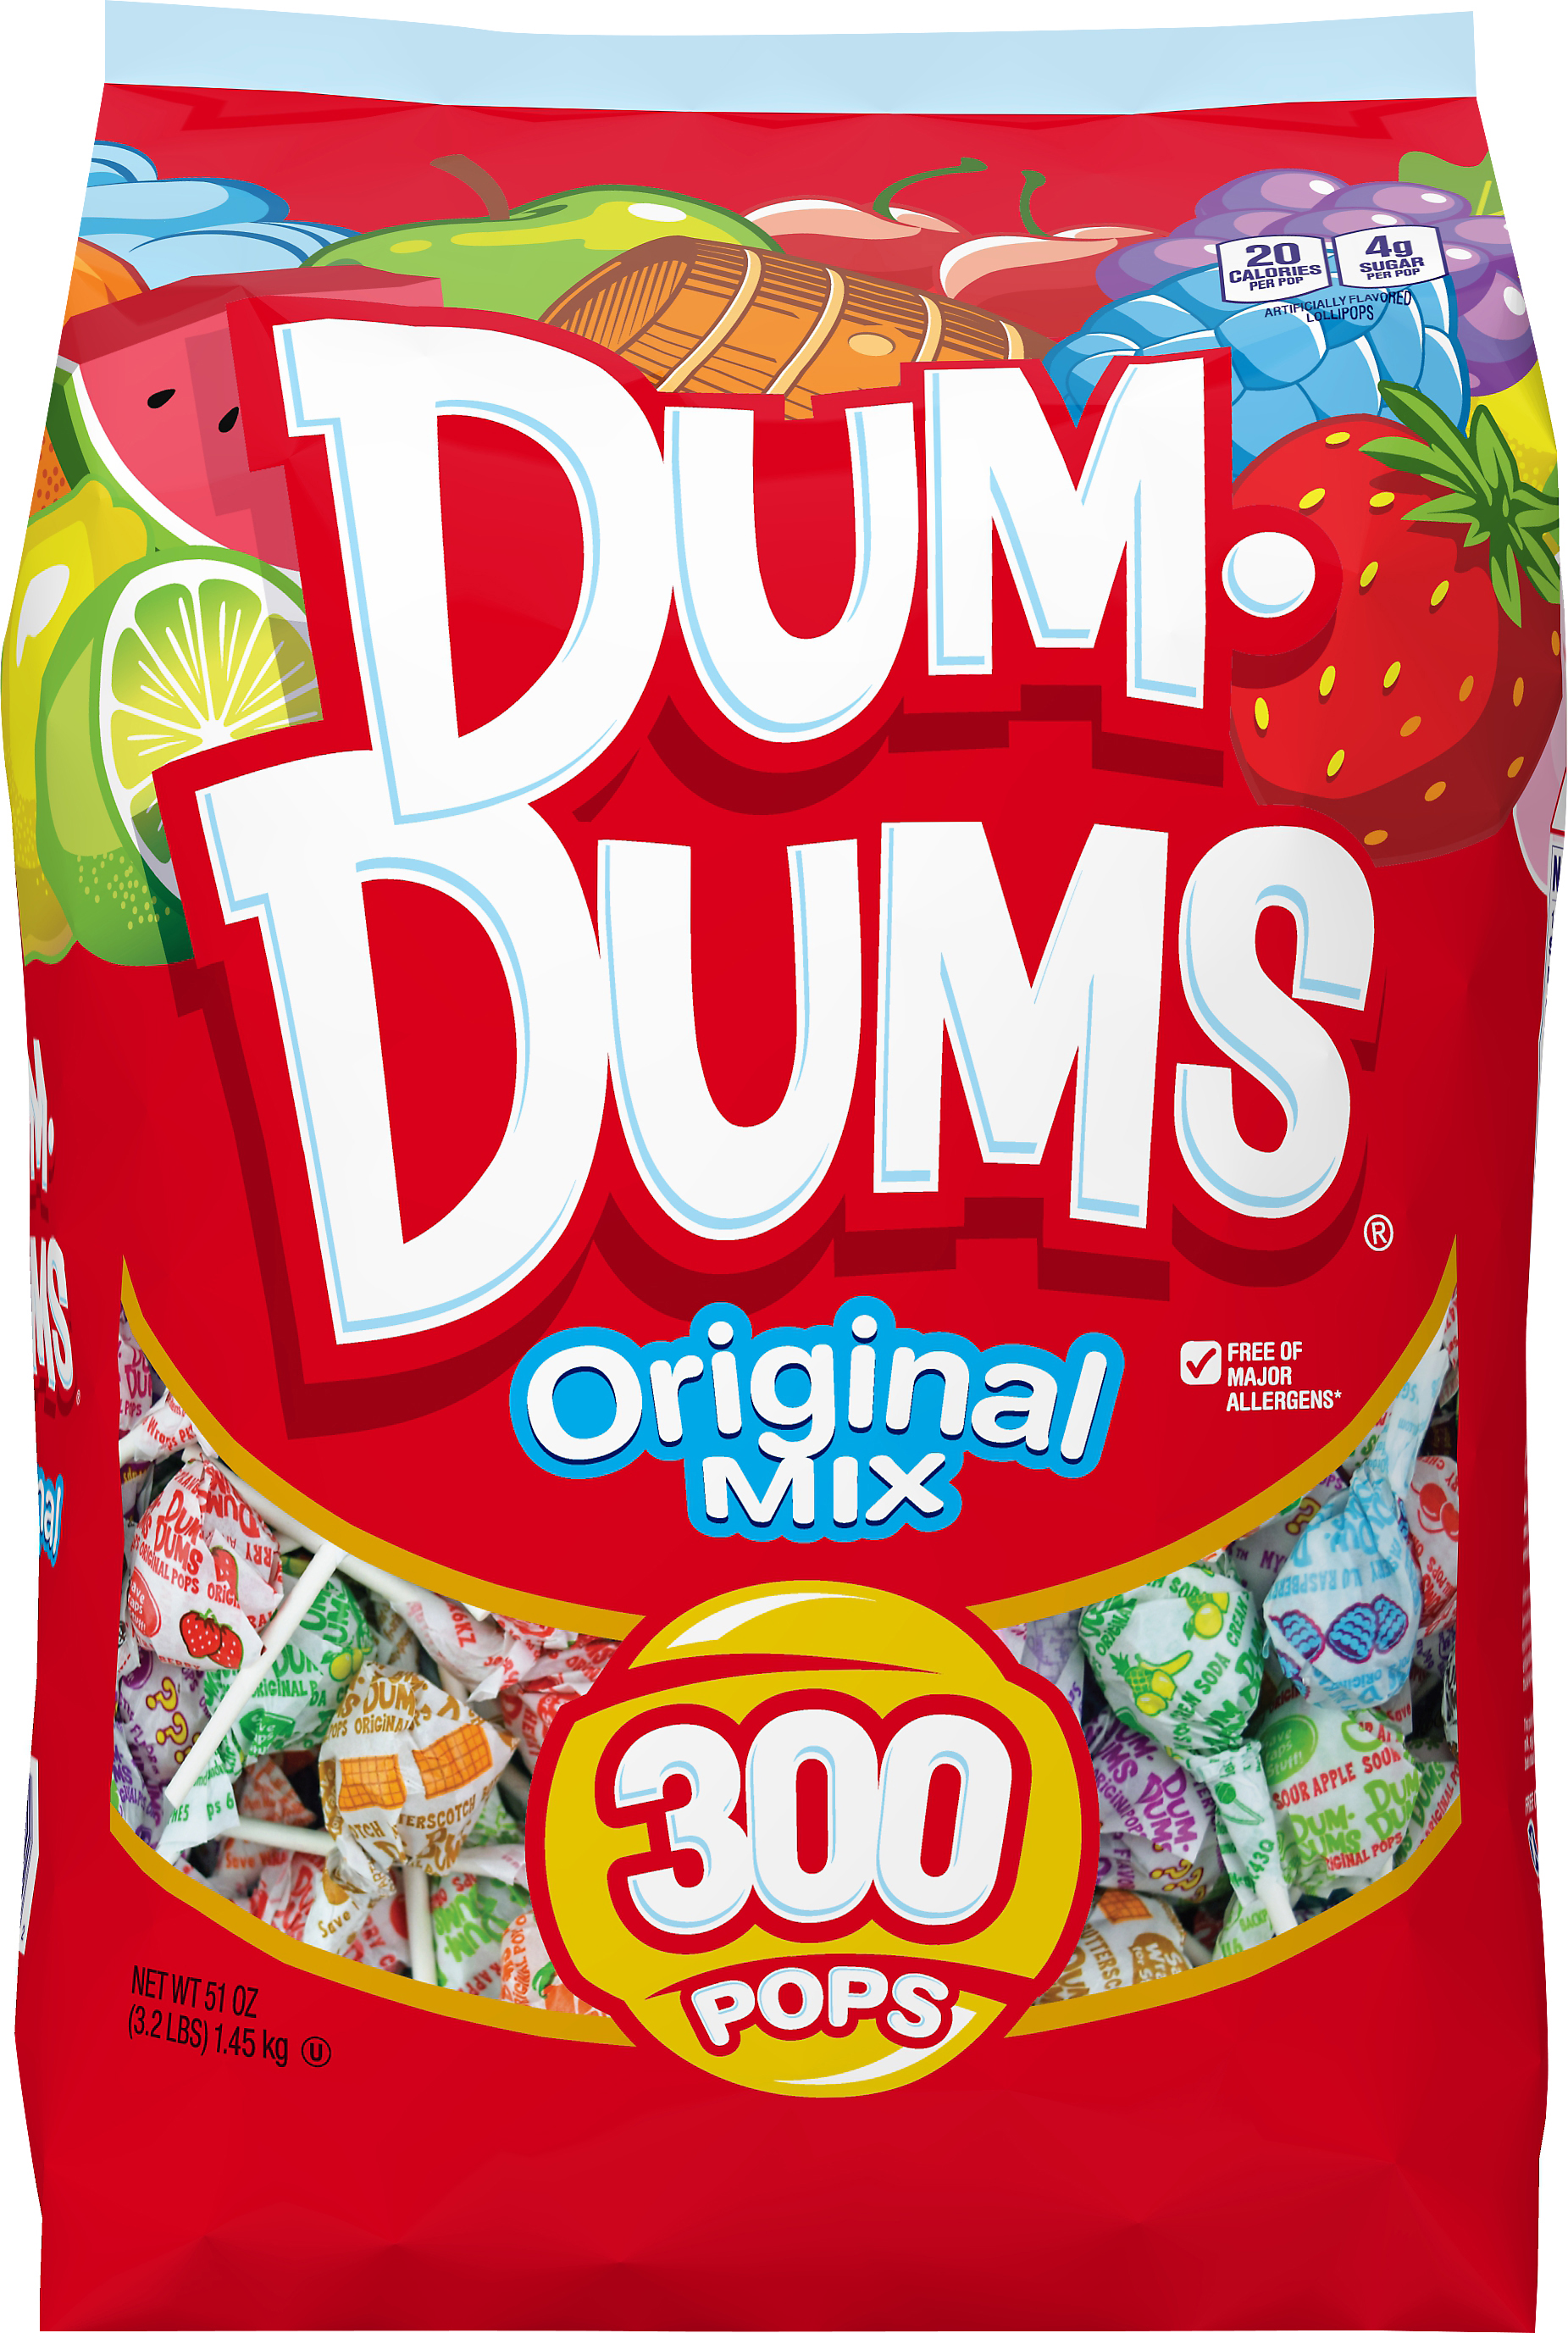 Dum Dums Original Flavor Mix Lollipops & Suckers, Party Candy, 300 count 51 oz Bag - image 1 of 13